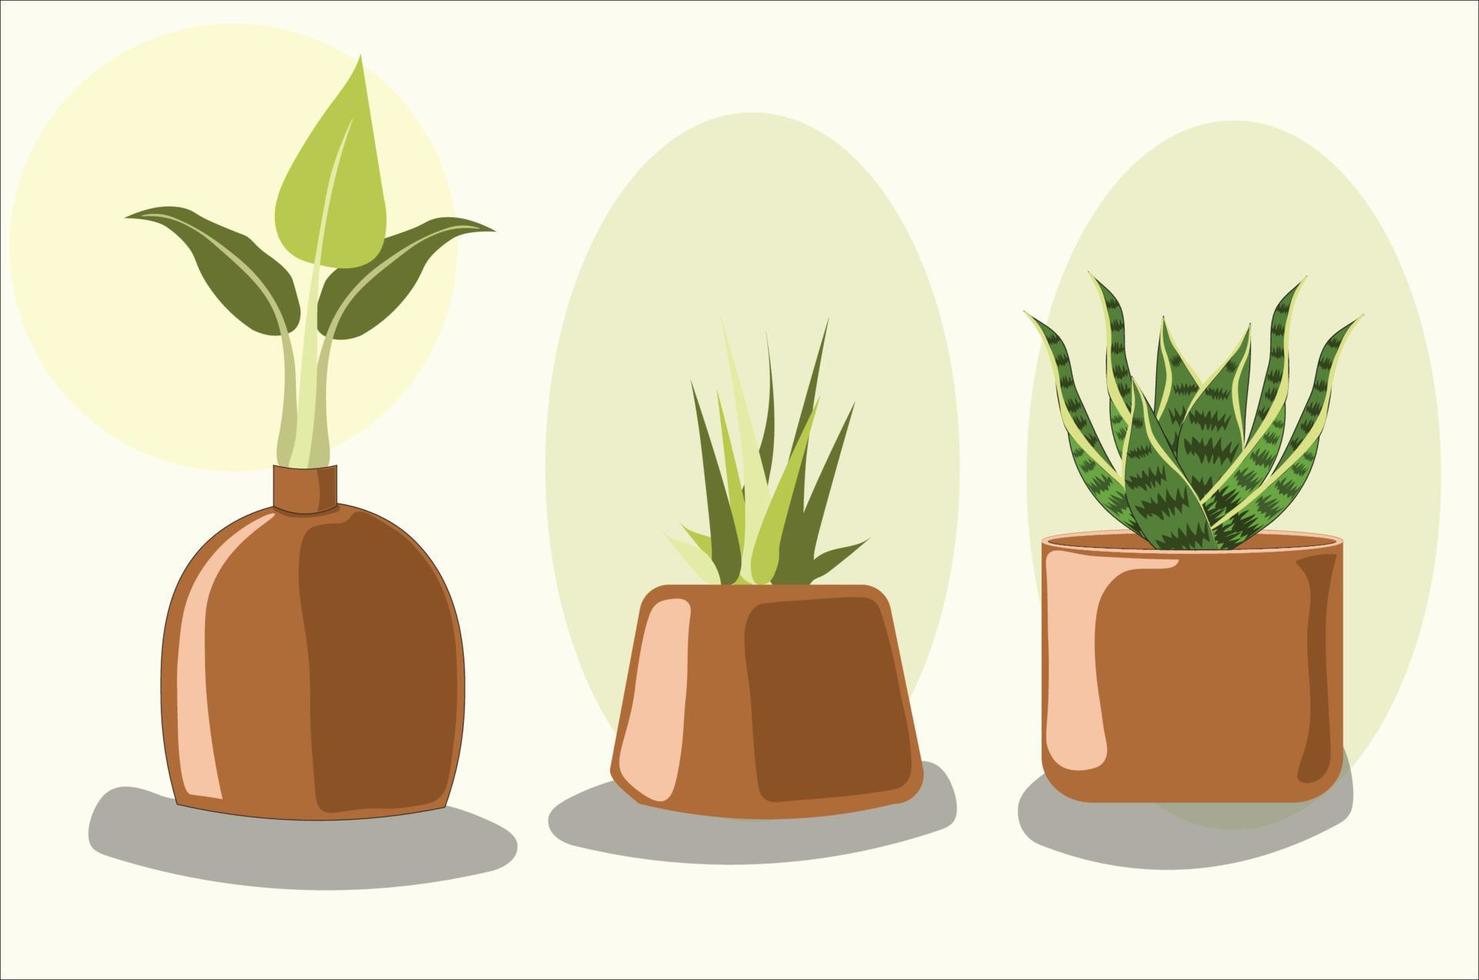 Ilustración de macetas y plantas. vector planta verde en maceta.